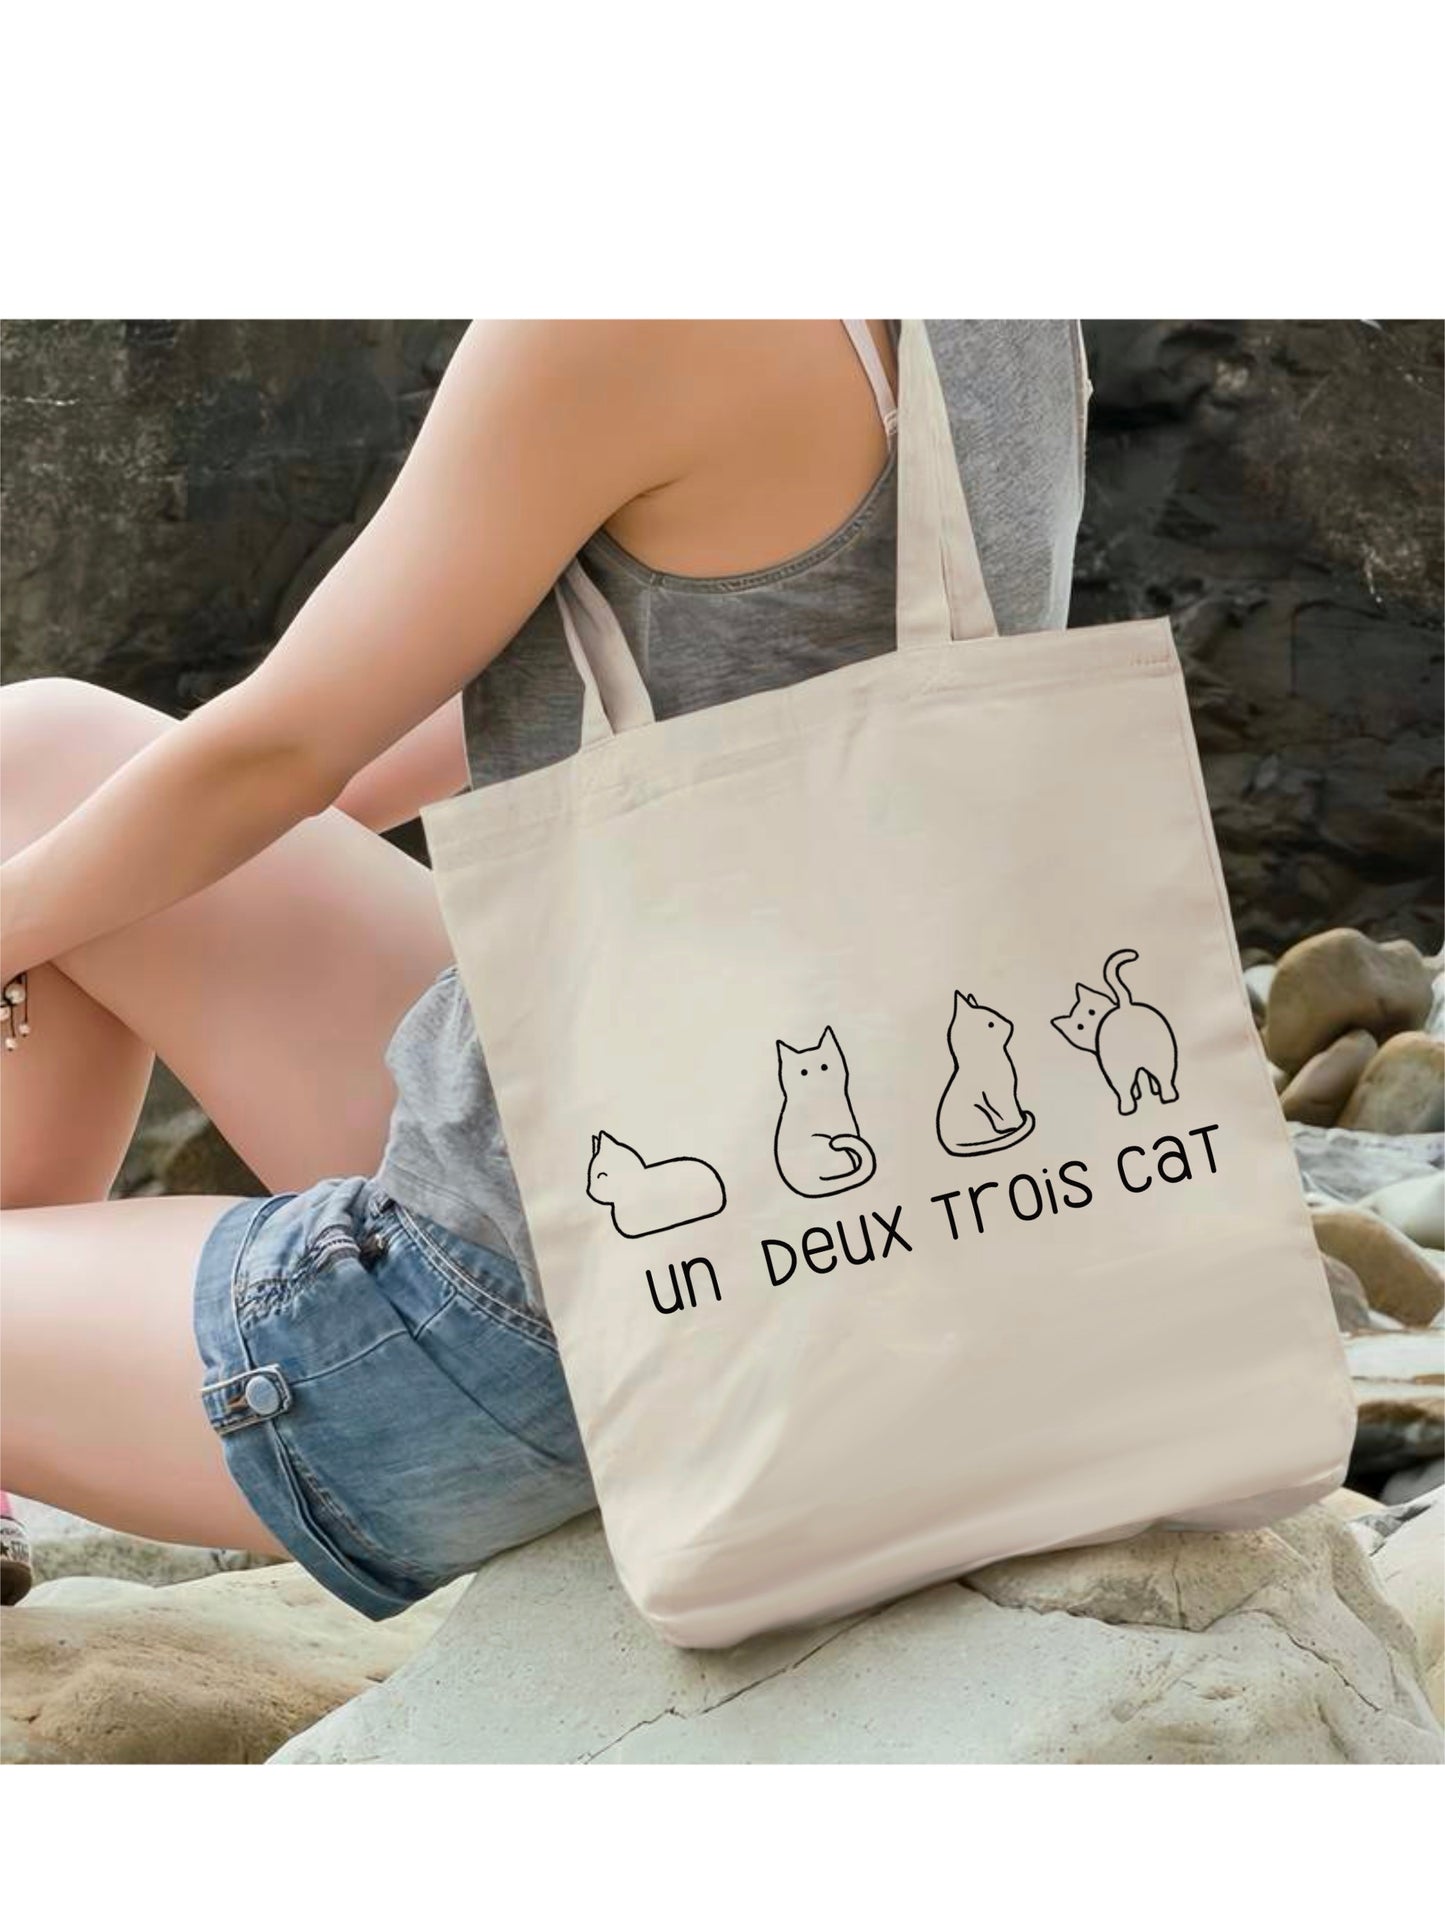 Un deux trois cat tote bag | Eco friendly Canvas reusable shopping Bag